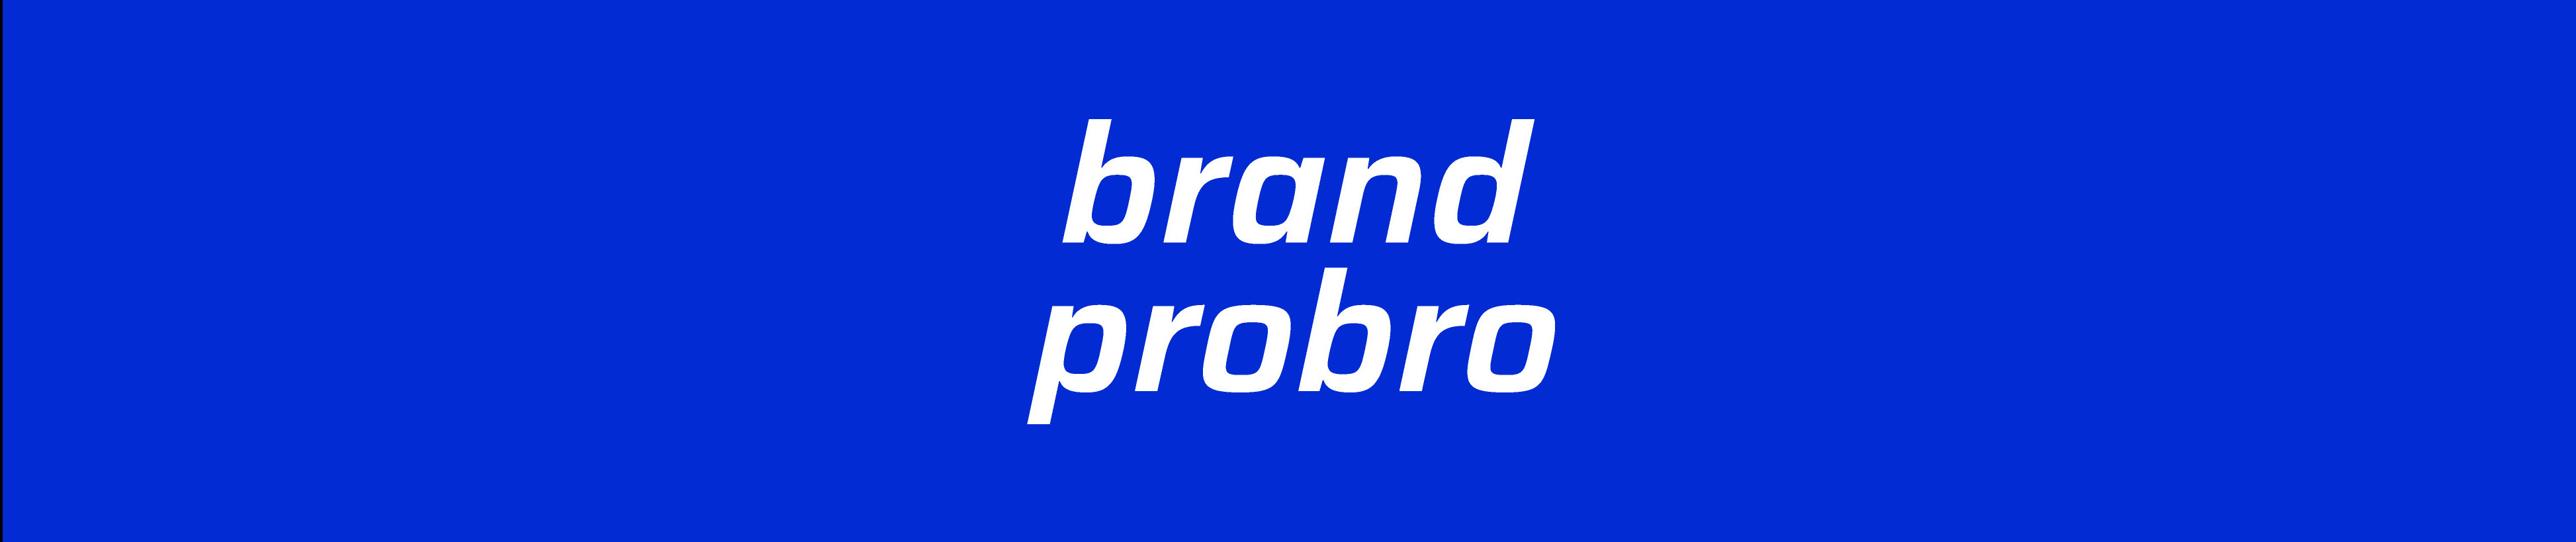 brand probro design's profile banner